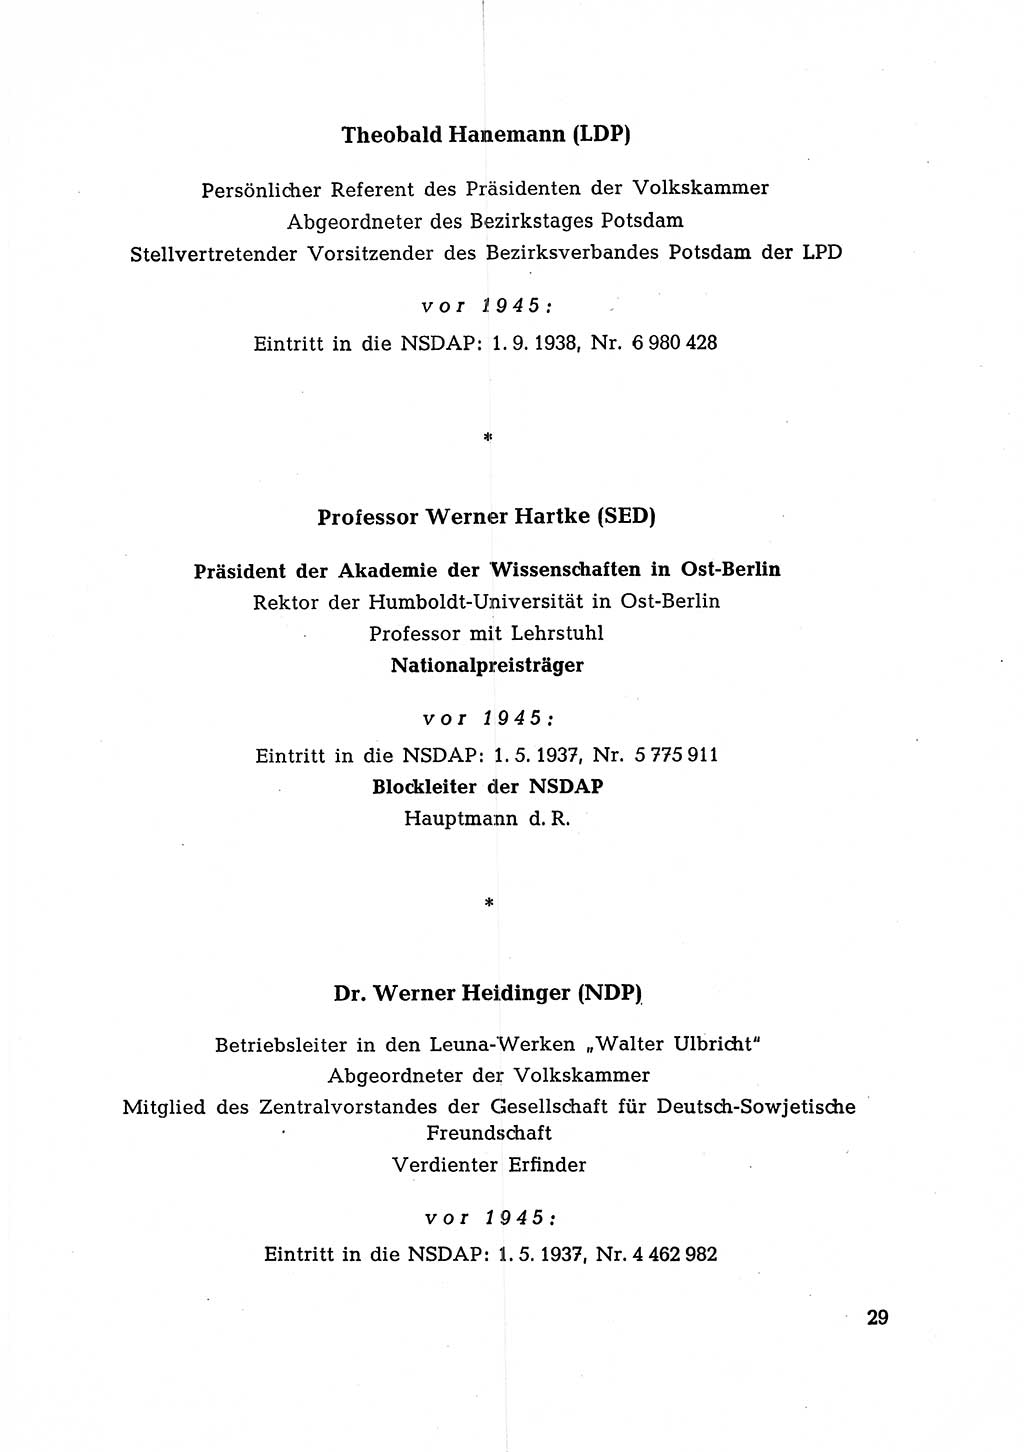 Ehemalige Nationalsozialisten in Pankows Diensten [Deutsche Demokratische Republik (DDR)] 1965, Seite 29 (Ehem. Nat.-Soz. DDR 1965, S. 29)